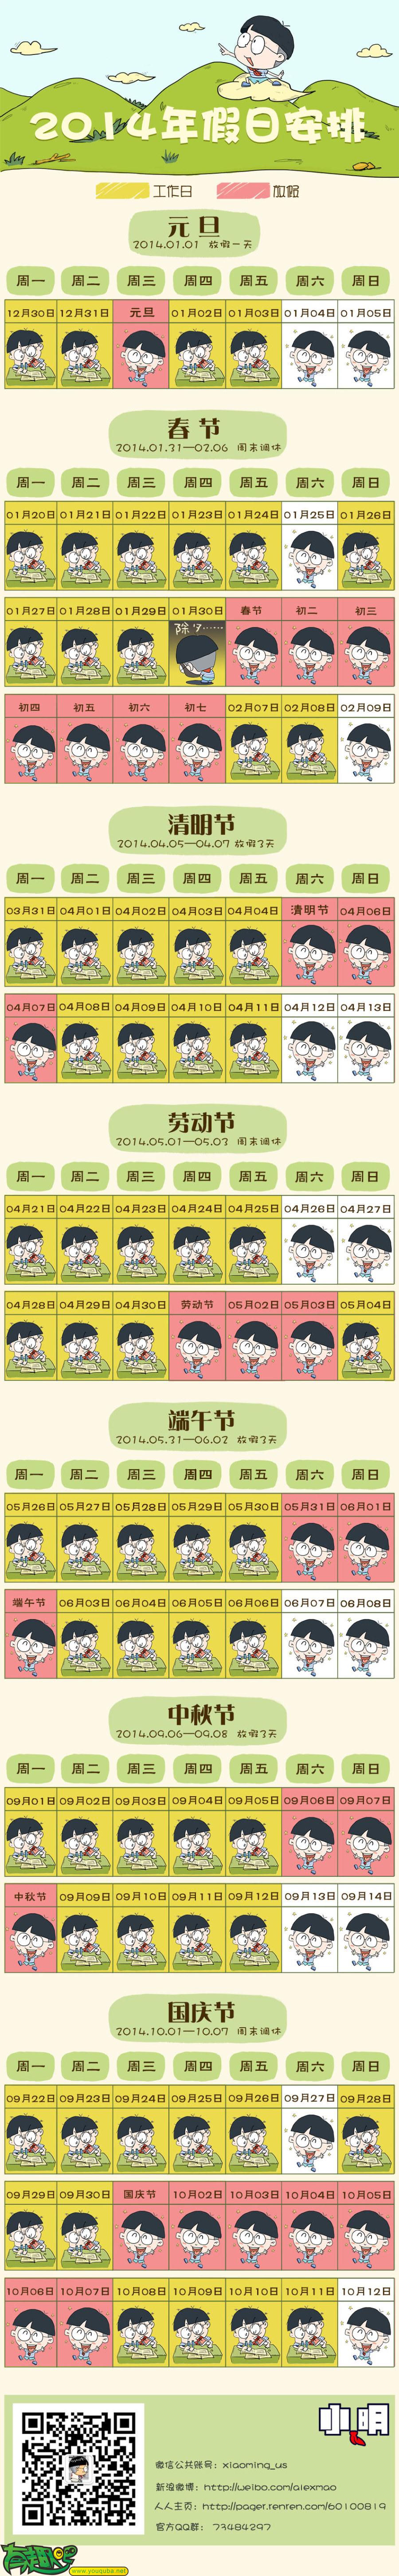 小明系列漫画：2014年放假安排